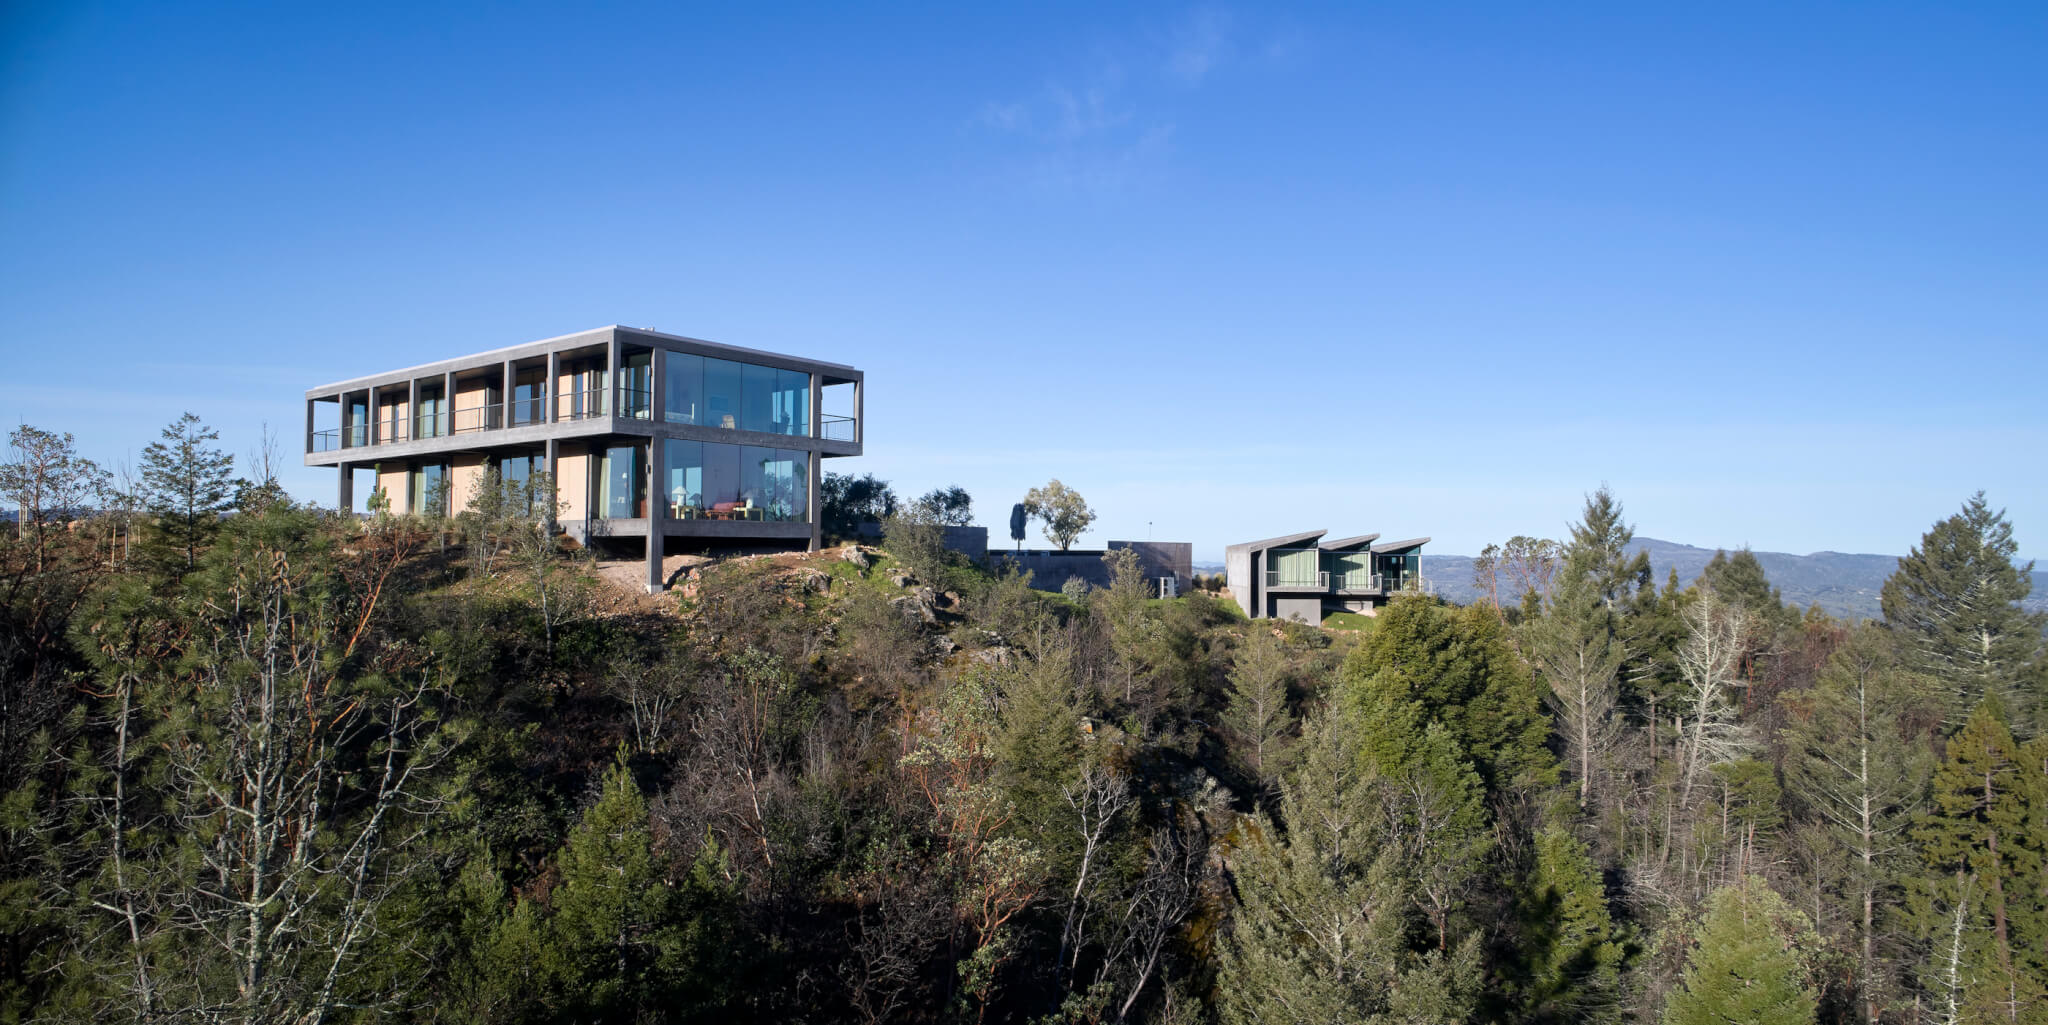 坐落在树木繁茂的悬崖上的一座现代化的房子